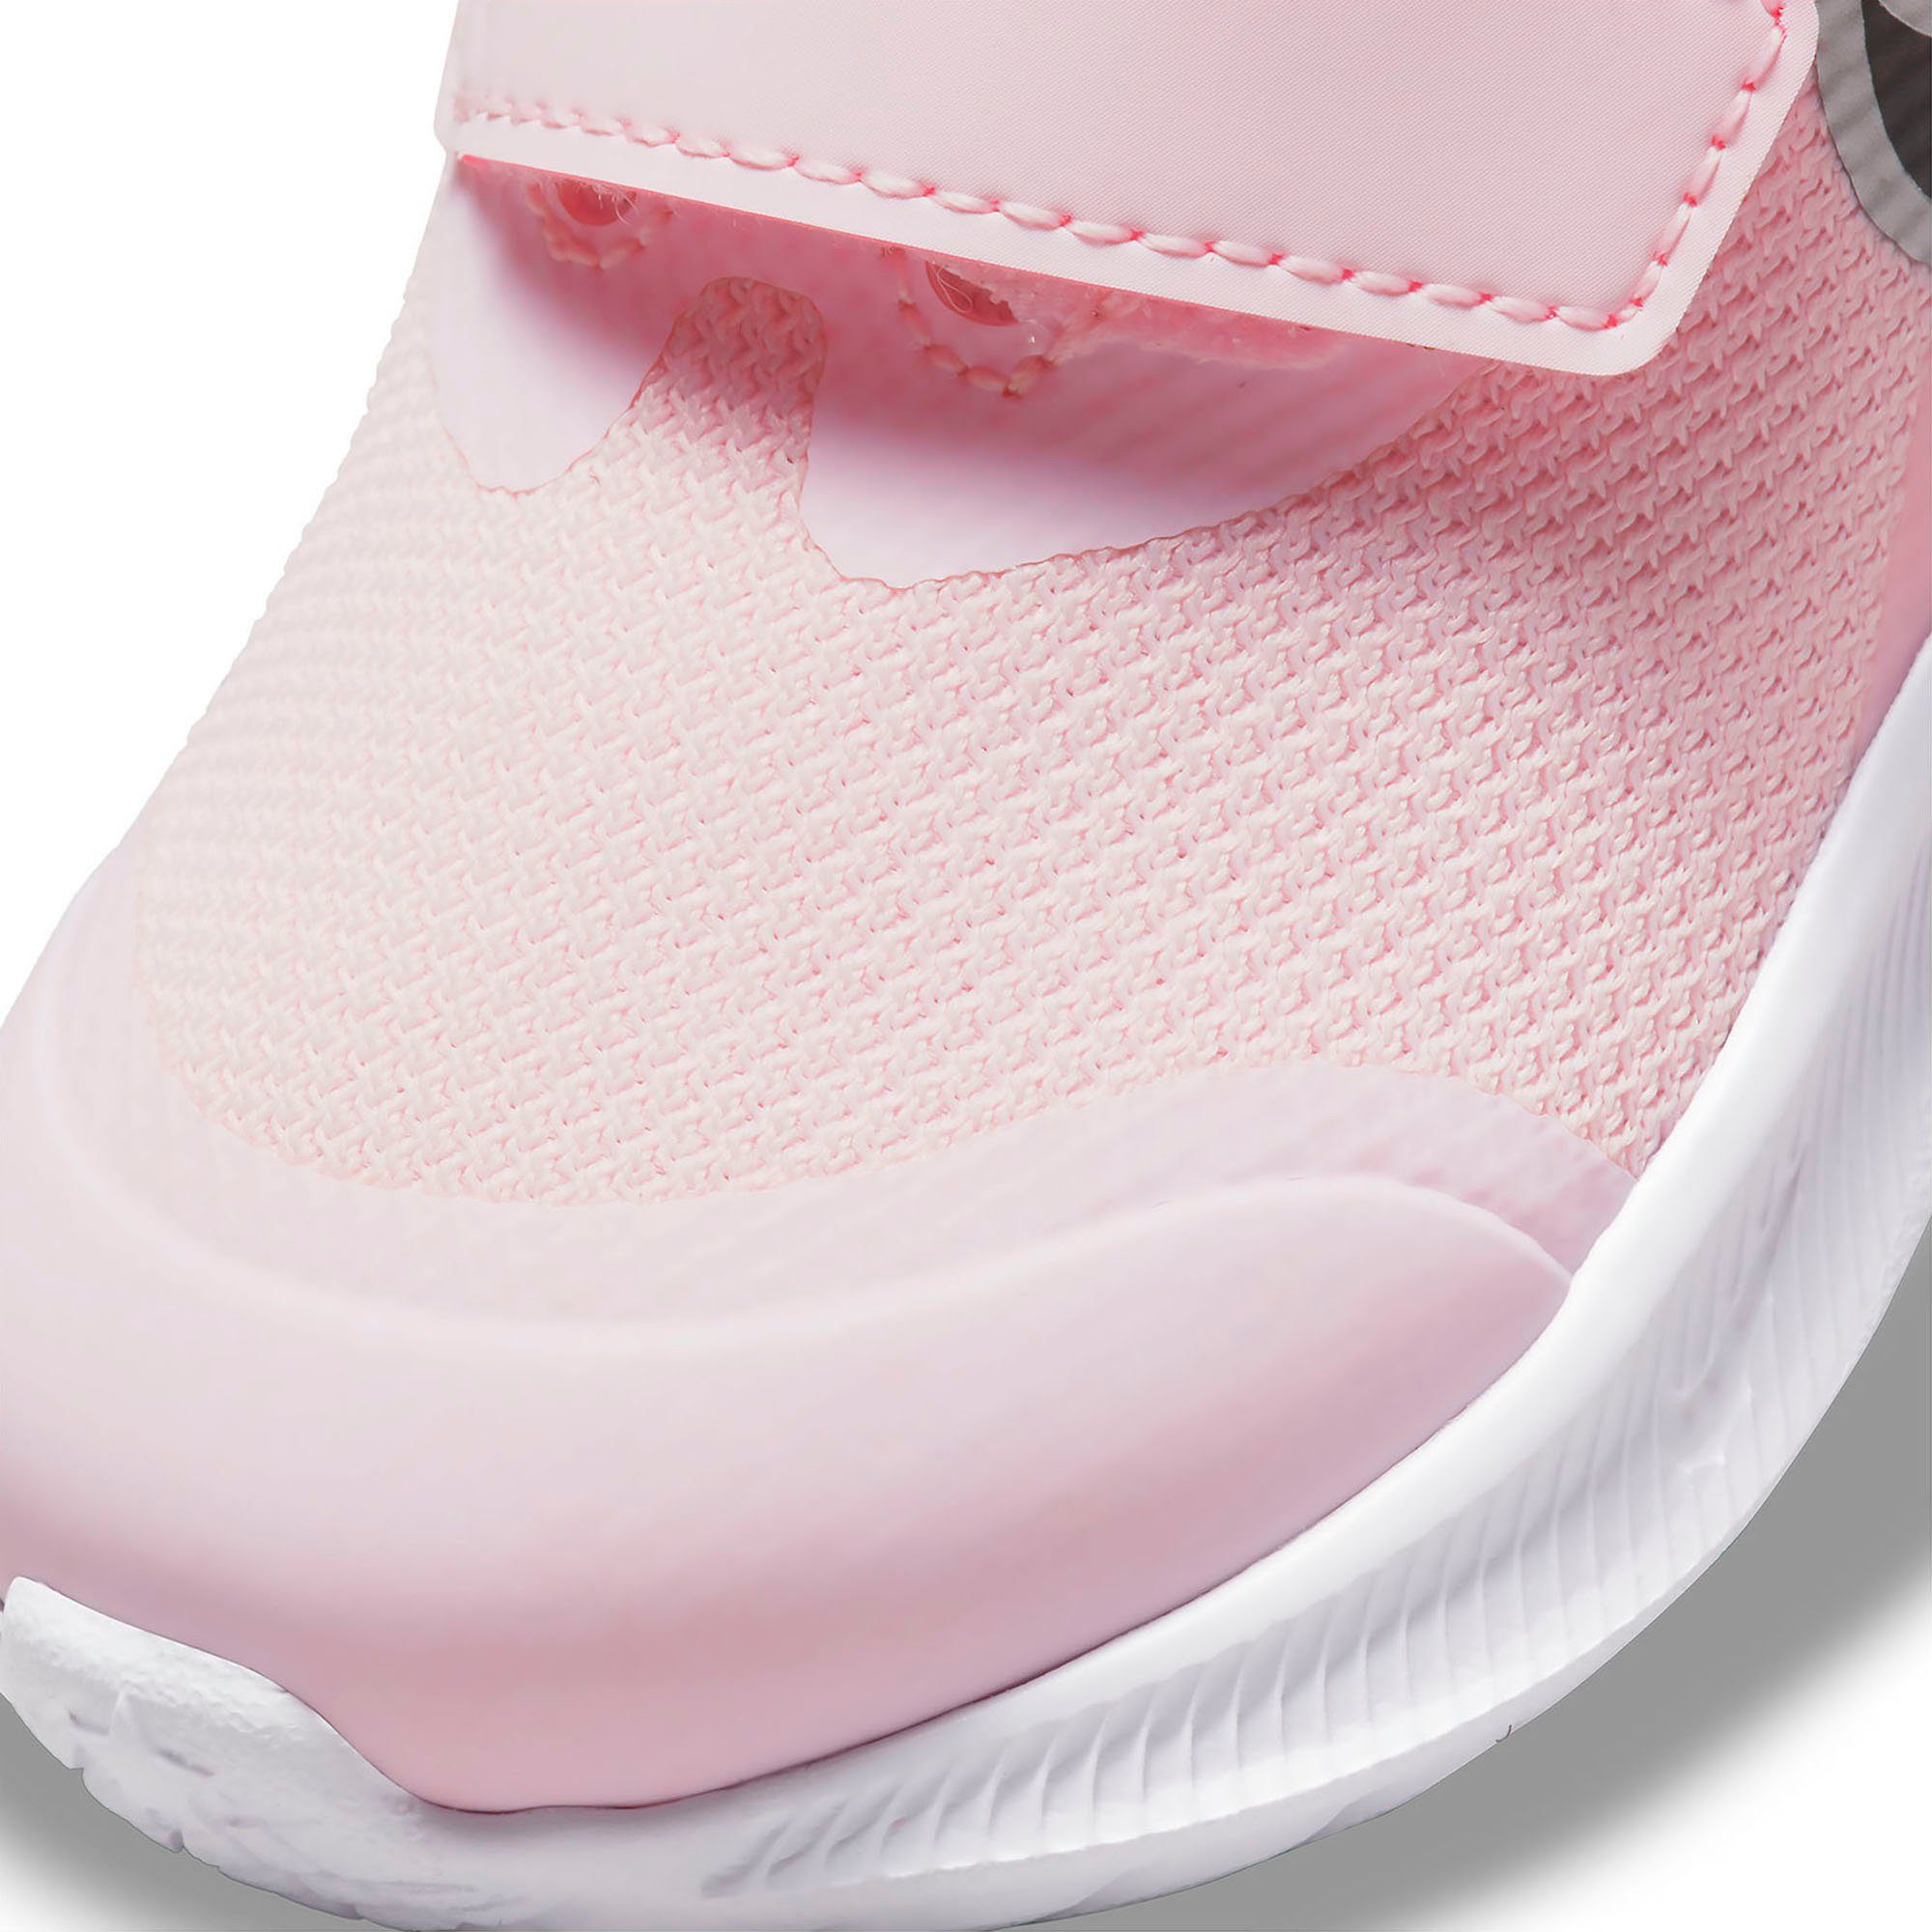 Nike RUNNER Klettverschluss Laufschuh pink (TD) mit 3 STAR